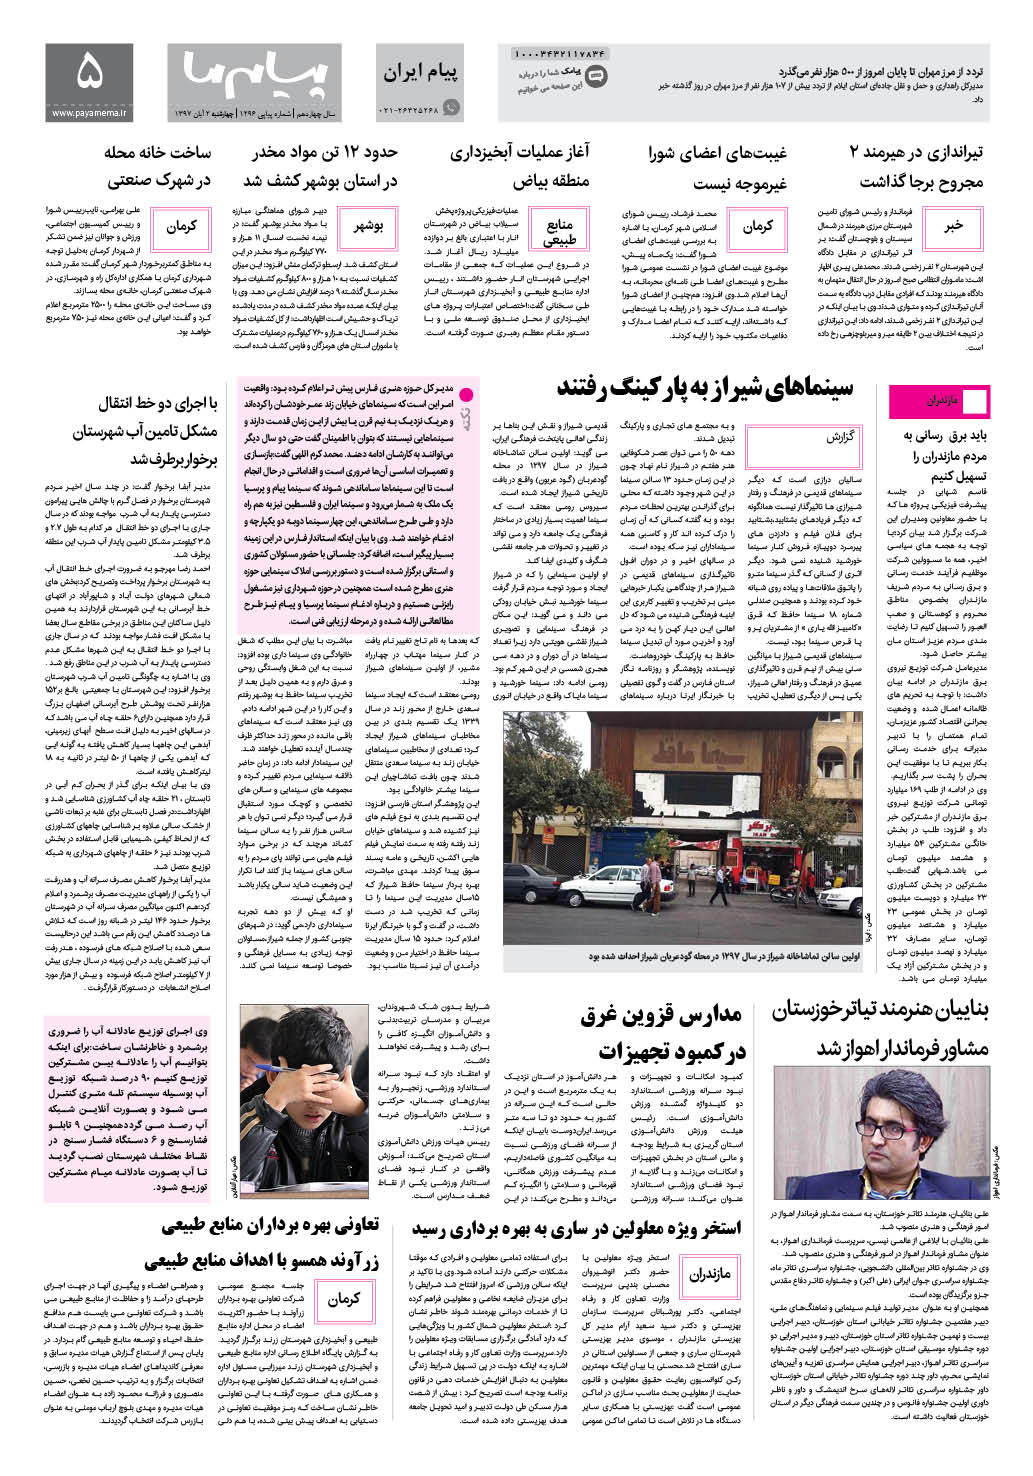 صفحه پیام ایران شماره 1296 روزنامه پیام ما